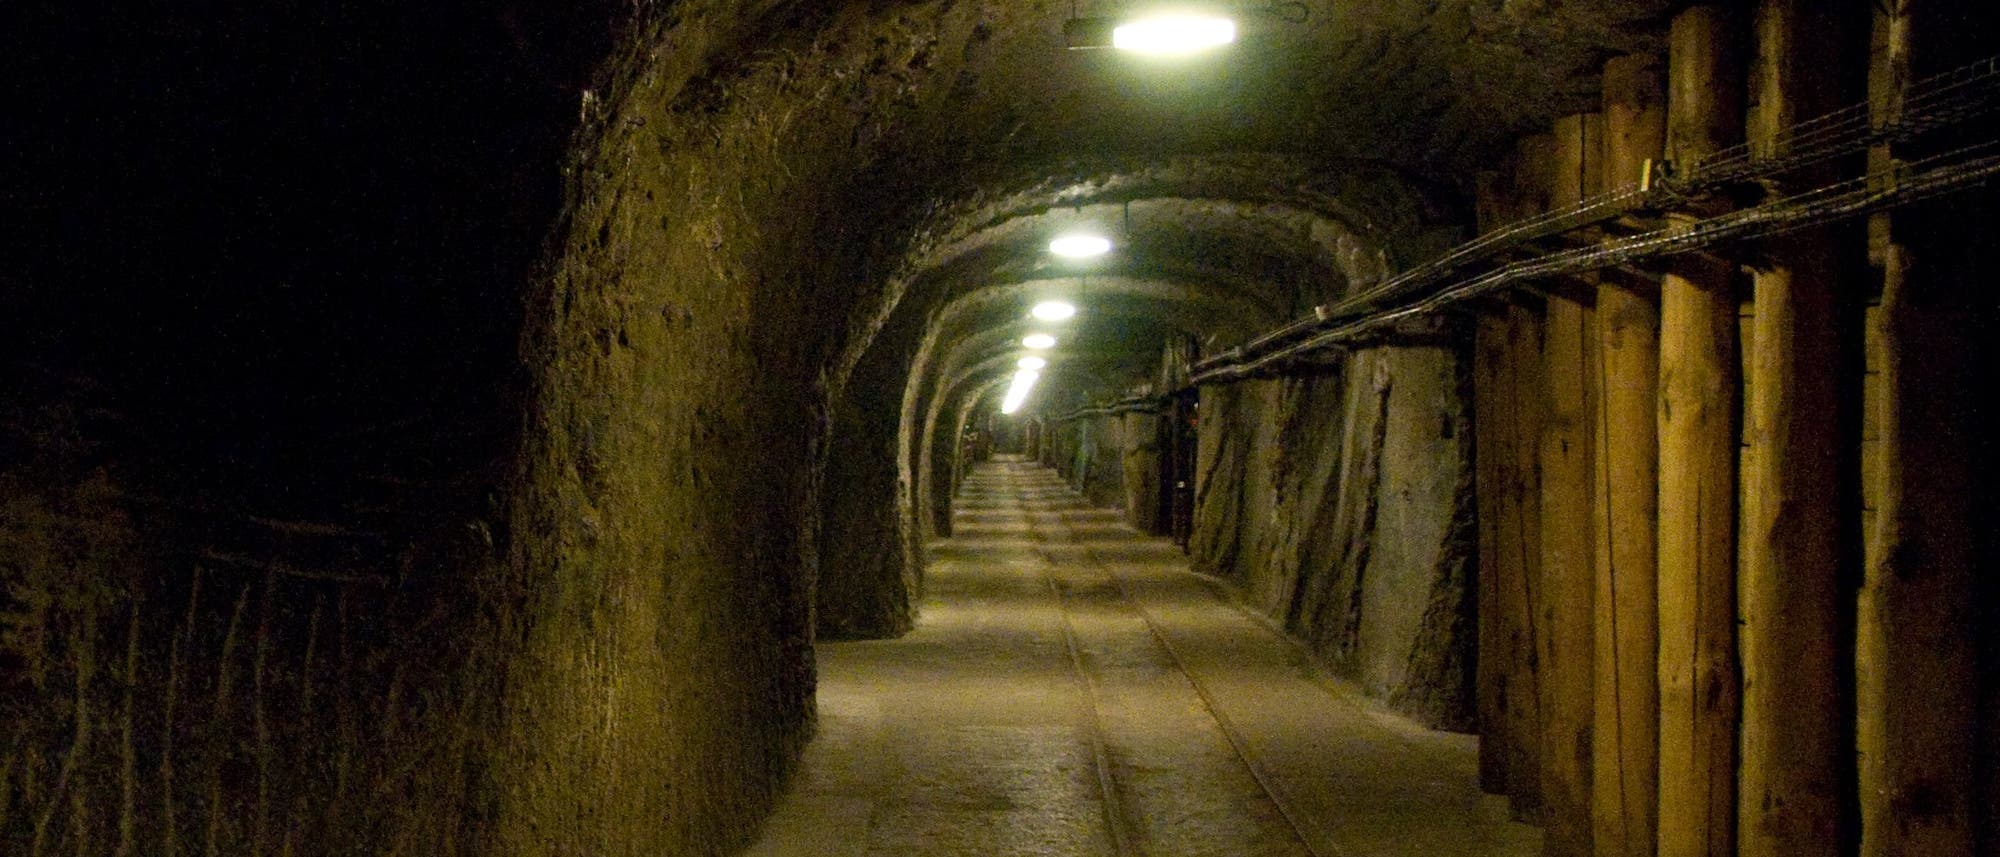 Schautunnel eines aufgelassenen Salzbergwerks